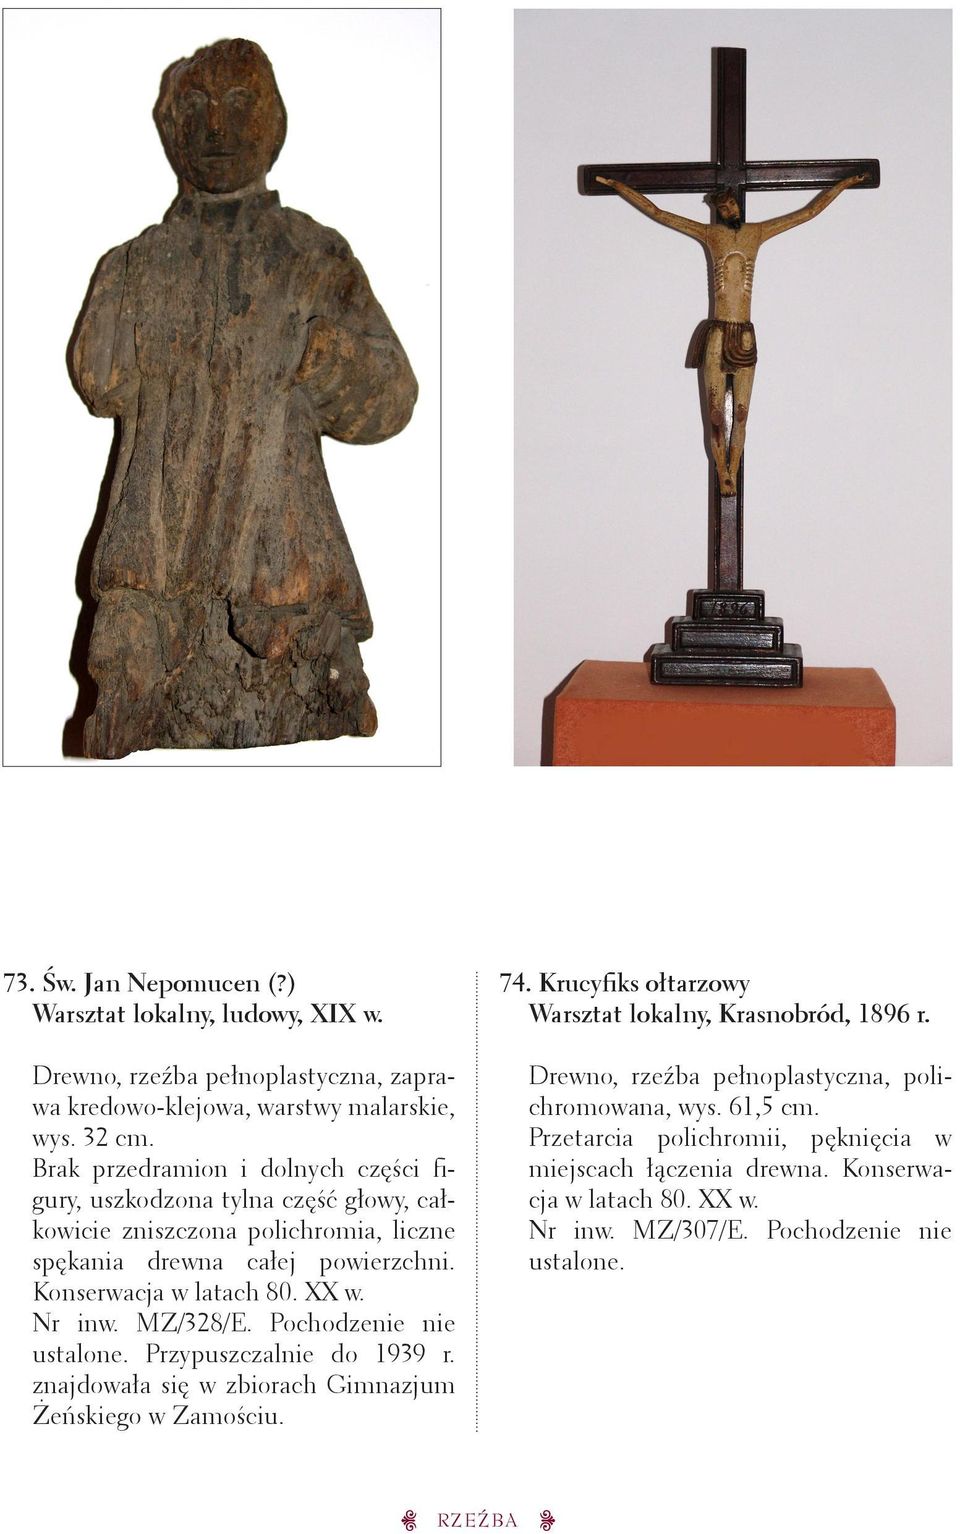 Konserwacja w latach 80. XX w. Nr inw. MZ/328/E. Pochodzenie nie Przypuszczalnie do 1939 r. znajdowała się w zbiorach Gimnazjum Żeńskiego w Zamościu. 74.